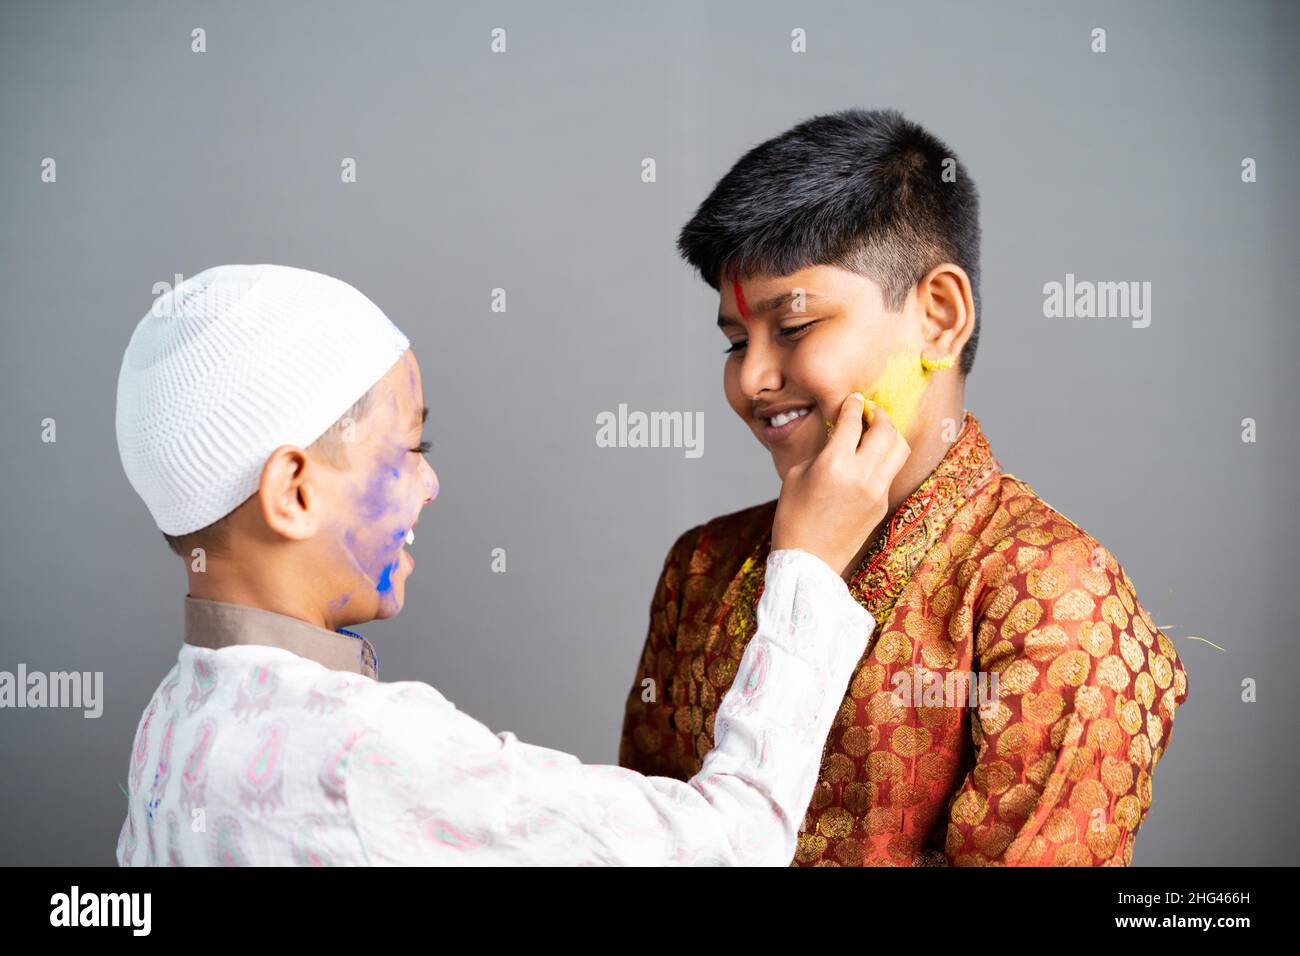 Les enfants religieux multiethniques célèbrent le holi en appliquant des couleurs au visage sur fond gris - concept de festivals culturels, amitié et unité dans Banque D'Images